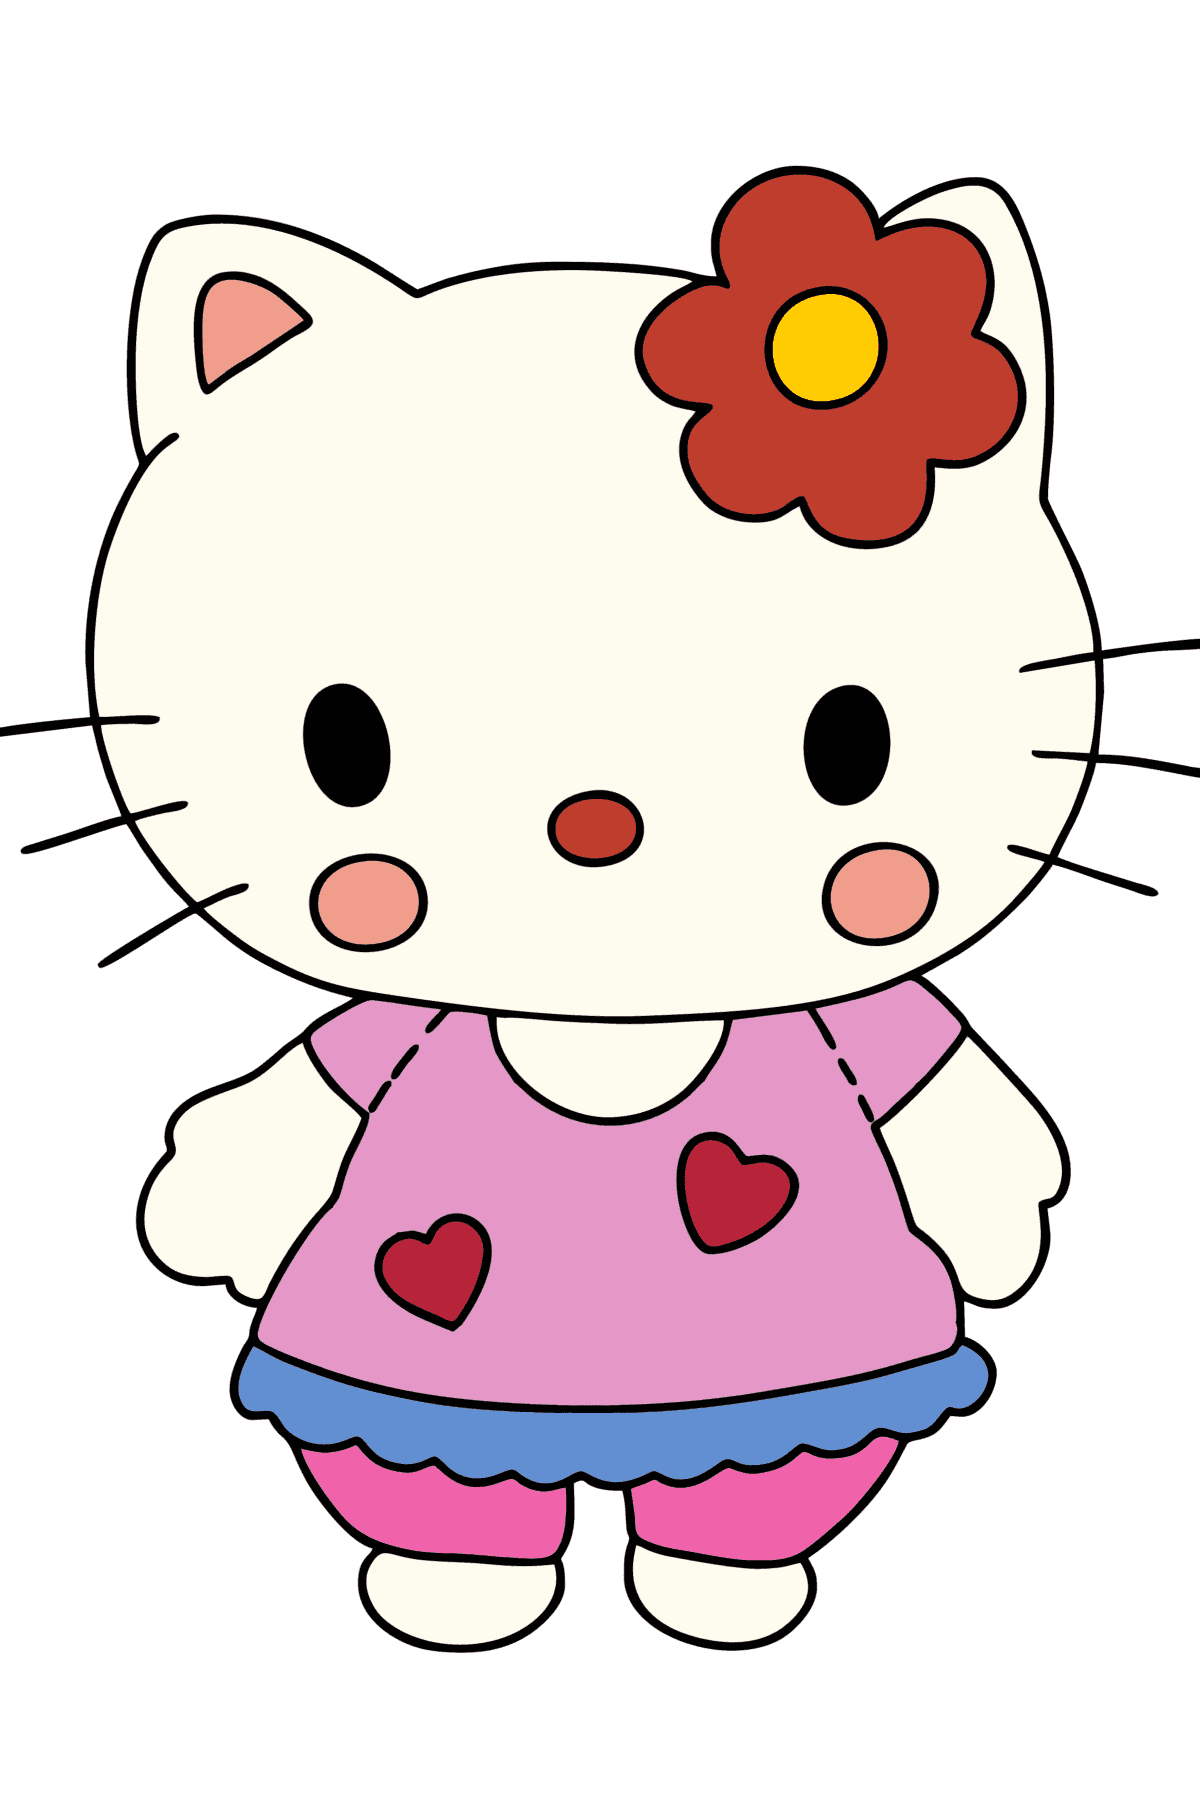 Ausmalbild Hello Kitty - Malvorlagen für Kinder